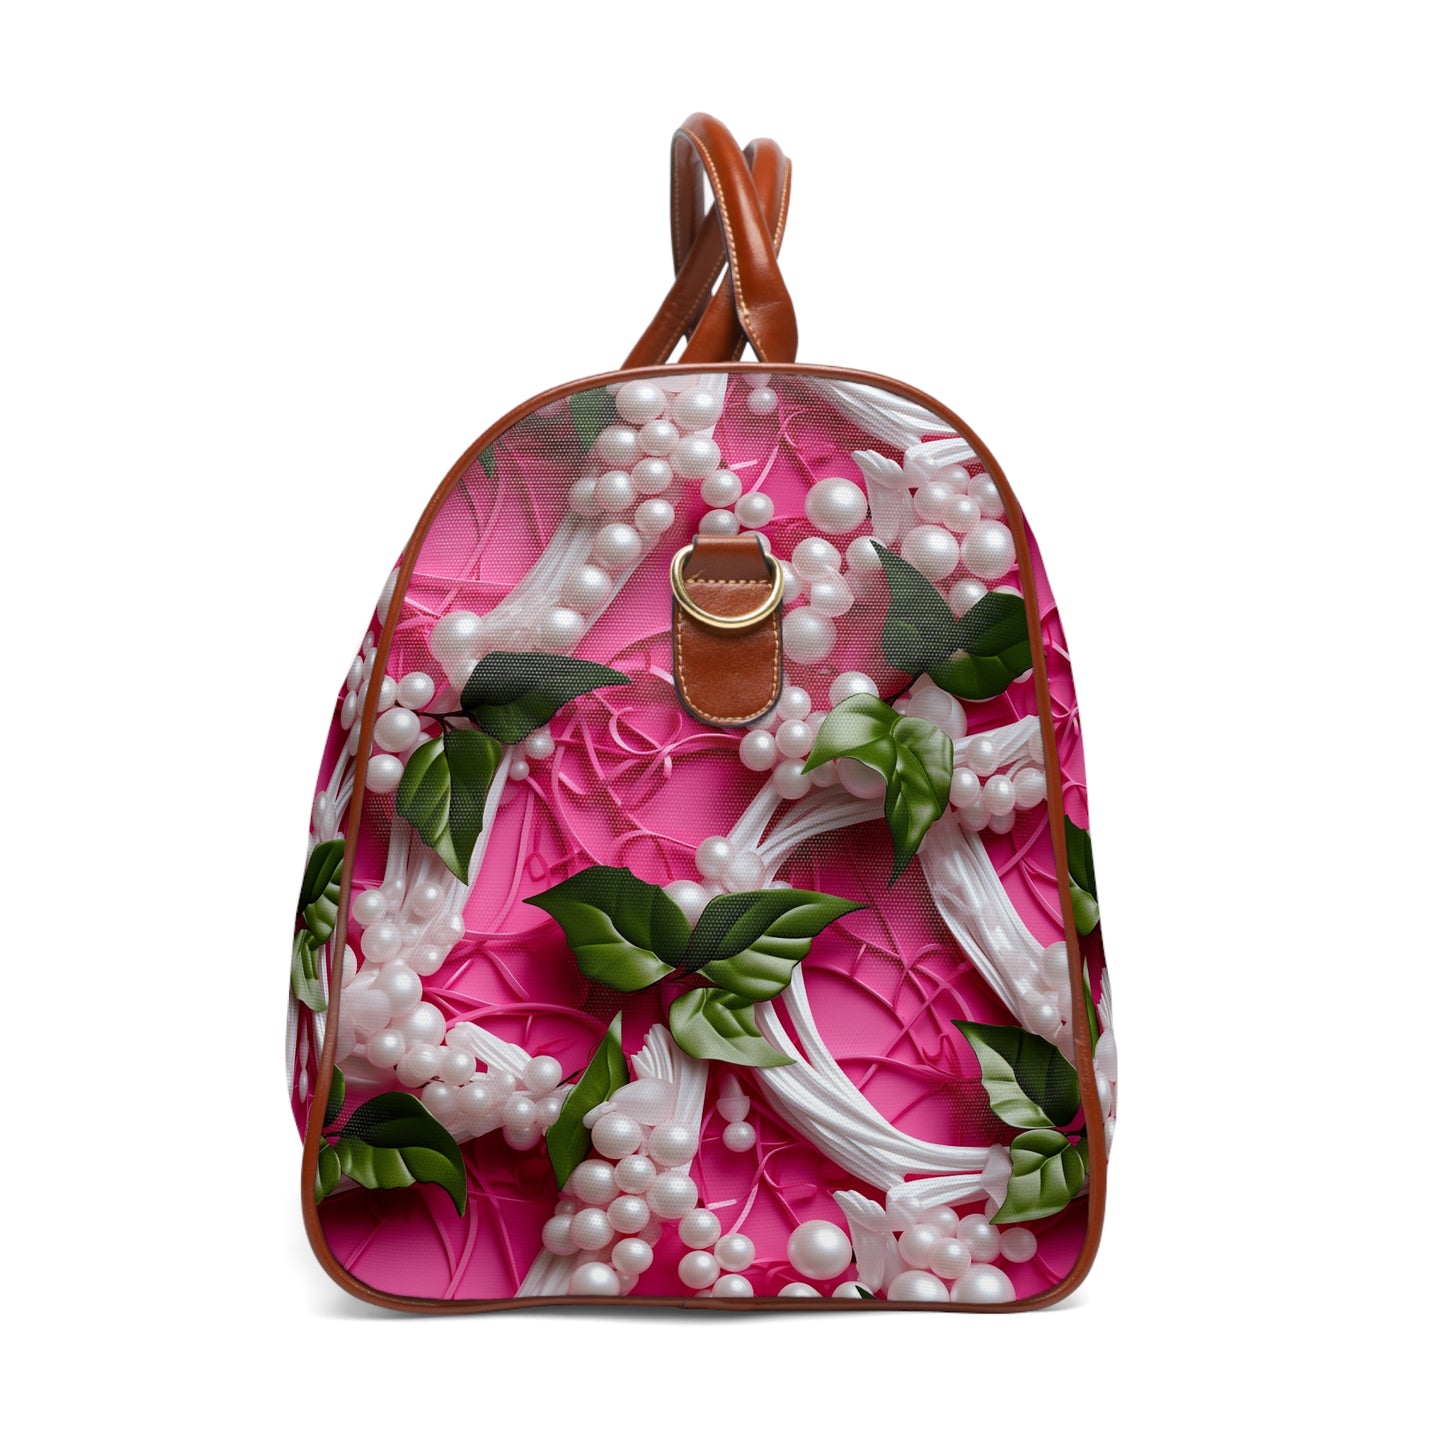 Ivy & Pearls Waterproof Travel Bag